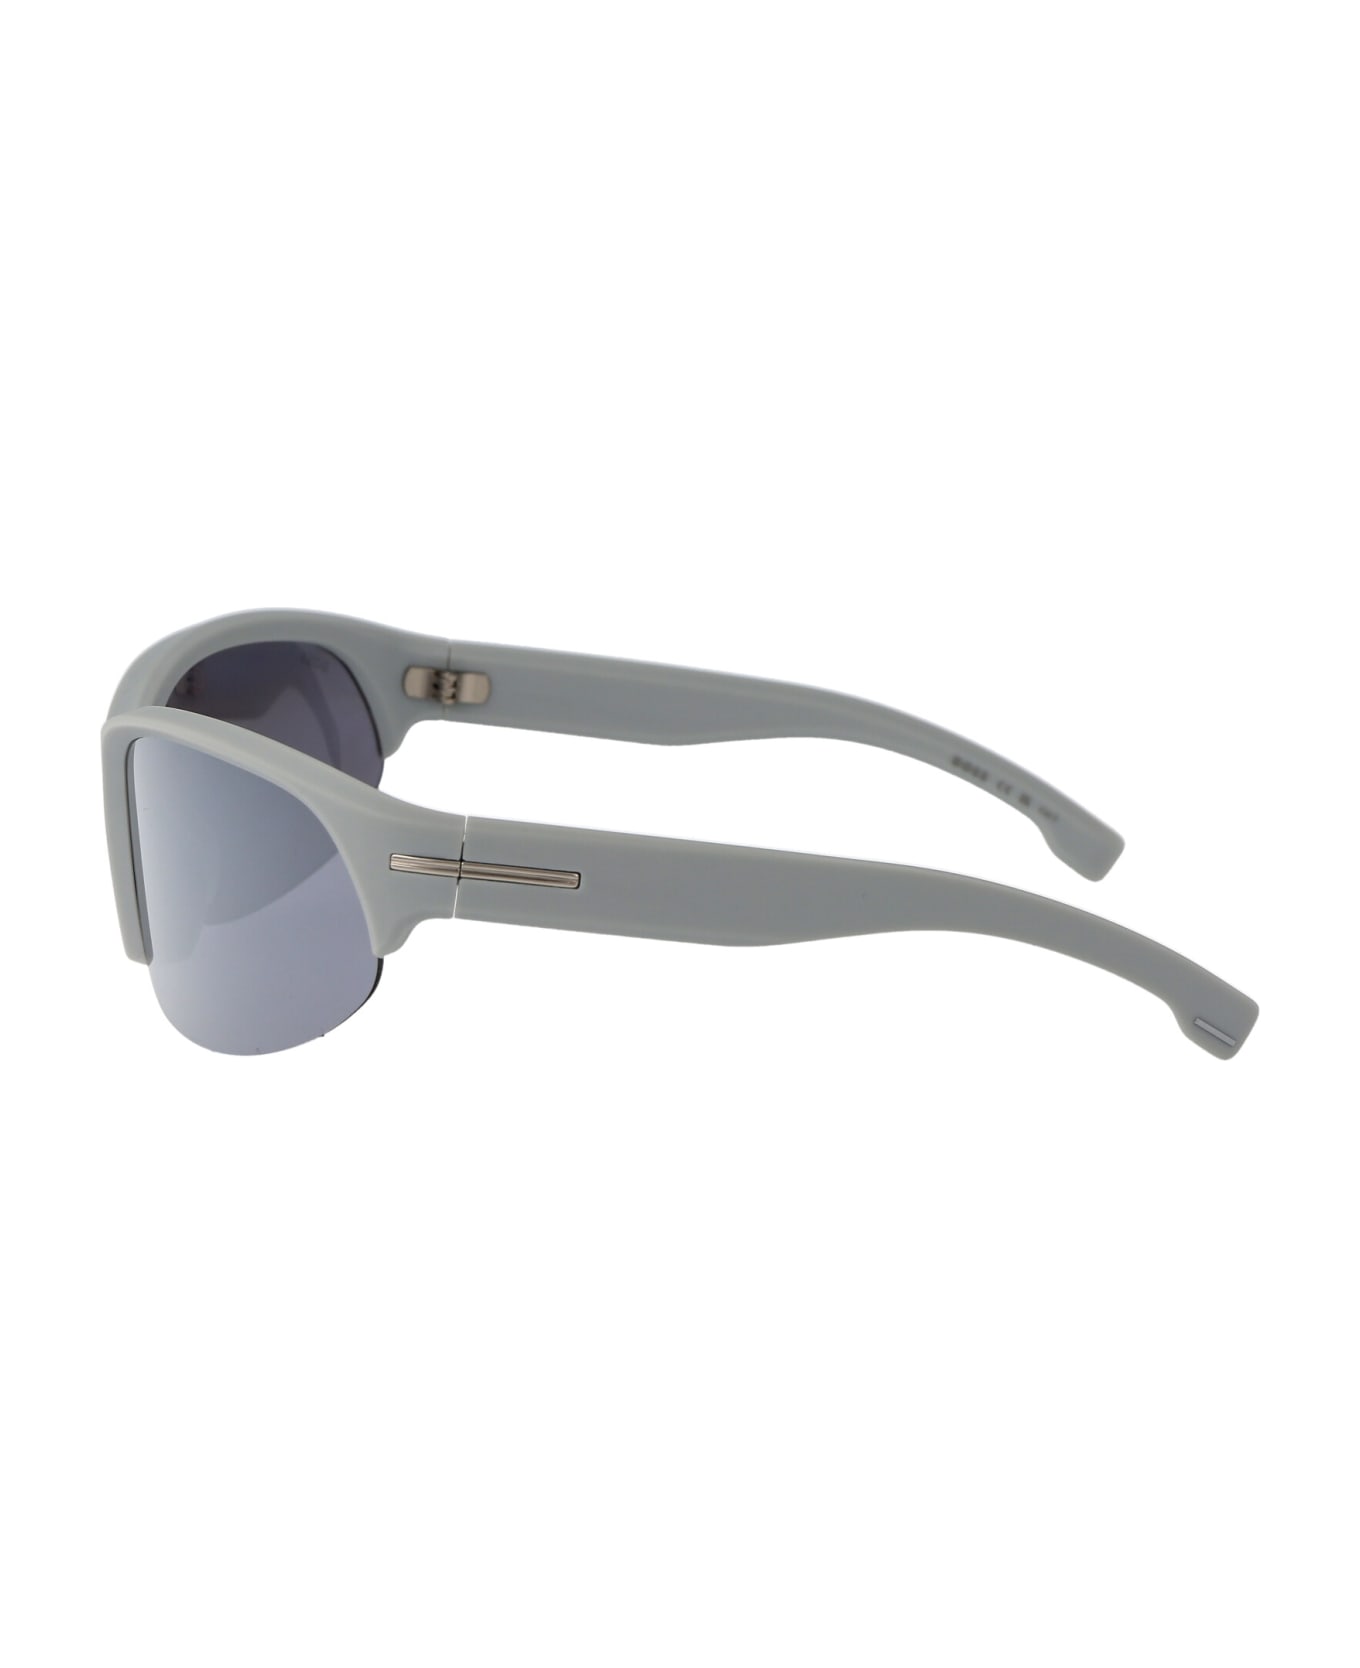 Hugo Boss Boss 1624/s Sunglasses - KB7T4 GREY